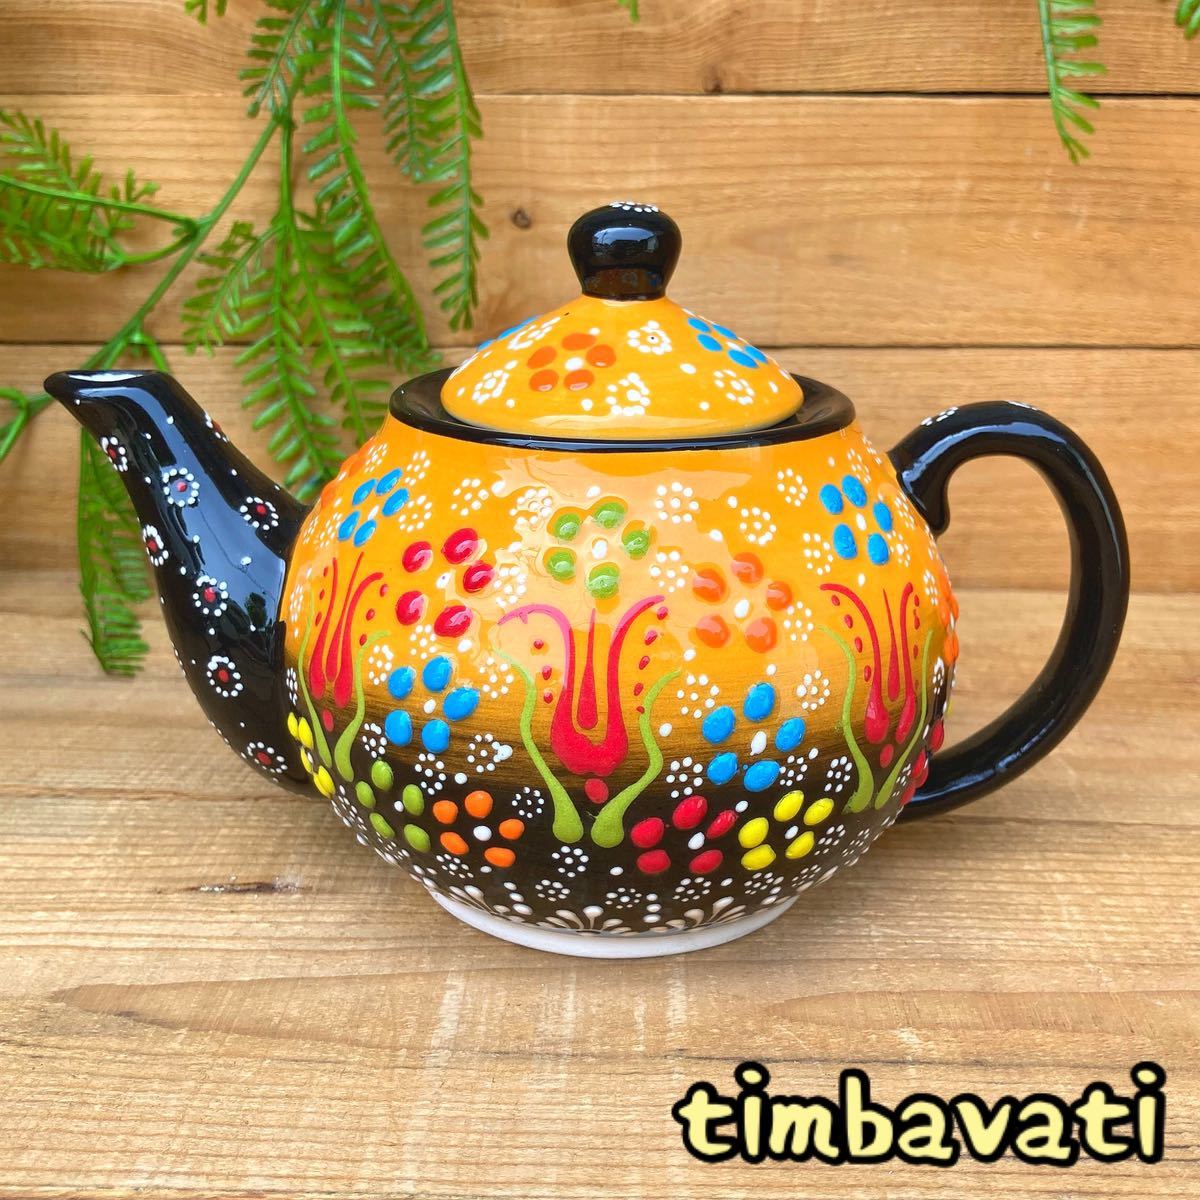 20cm☆Nuevo☆ Tetera de cerámica turca *Amarillo* Cerámica Kyutahya hecha a mano [Envío gratis con condiciones] 118, vajilla occidental, utensilios de té, maceta